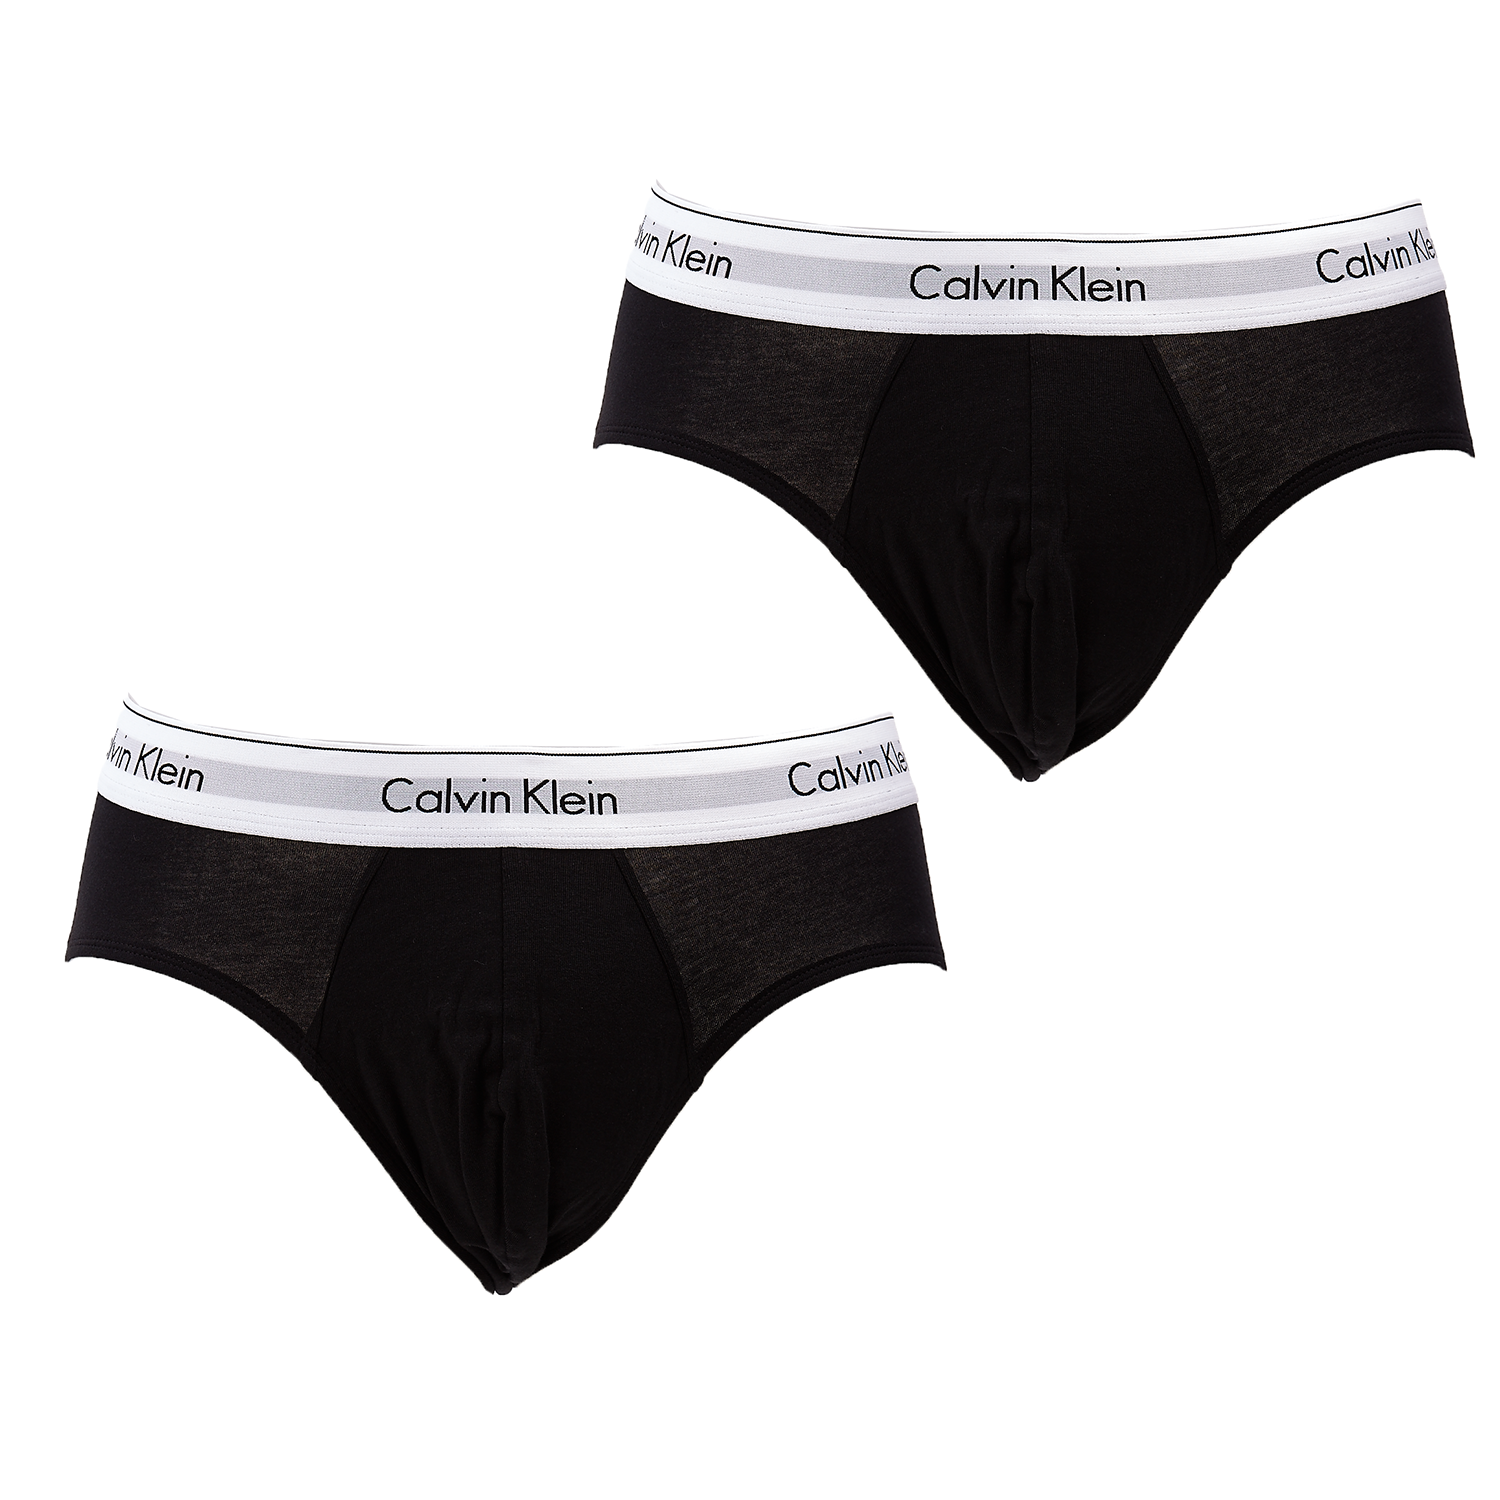 Ανδρικά/Ρούχα/Εσώρουχα/Σλίπ CK UNDERWEAR - Σετ σλιπ Calvin Klein μαύρα